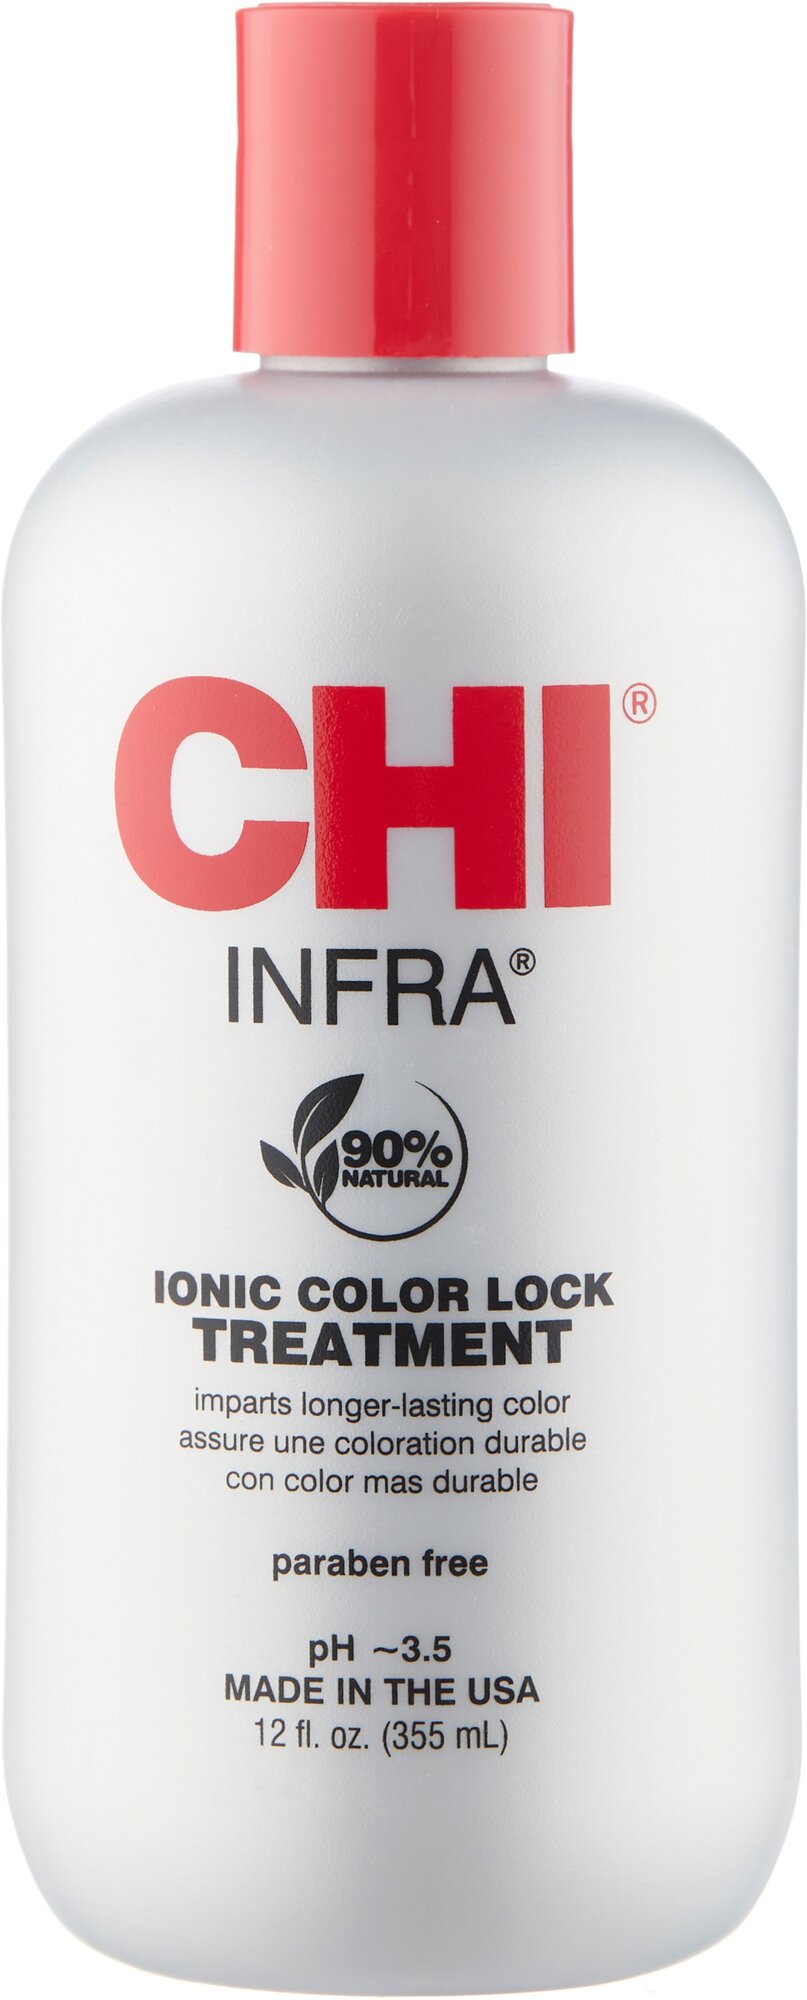 Кондиционер для окрашенных волос Chi Ionic Color Lock Treatment, 355 мл